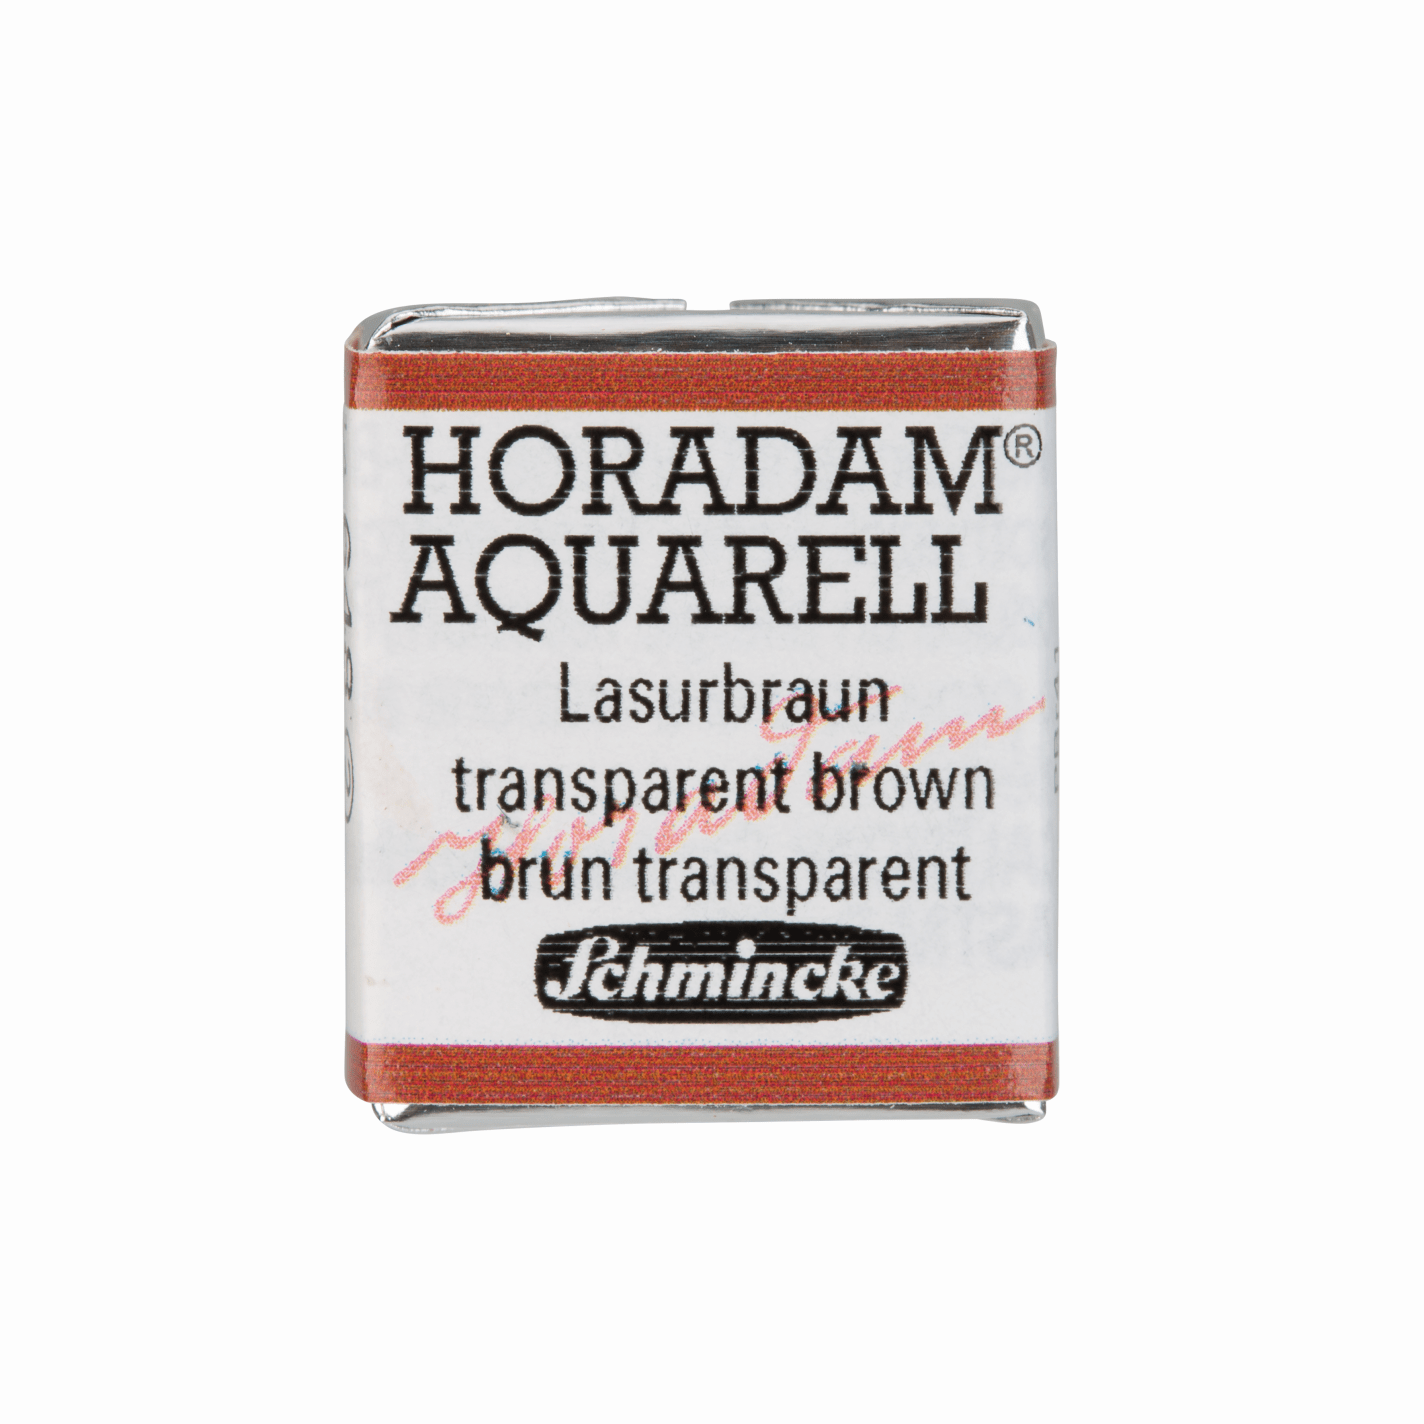 Schmincke Horadam Aquarell pans 1/2 pan Transparent Brown